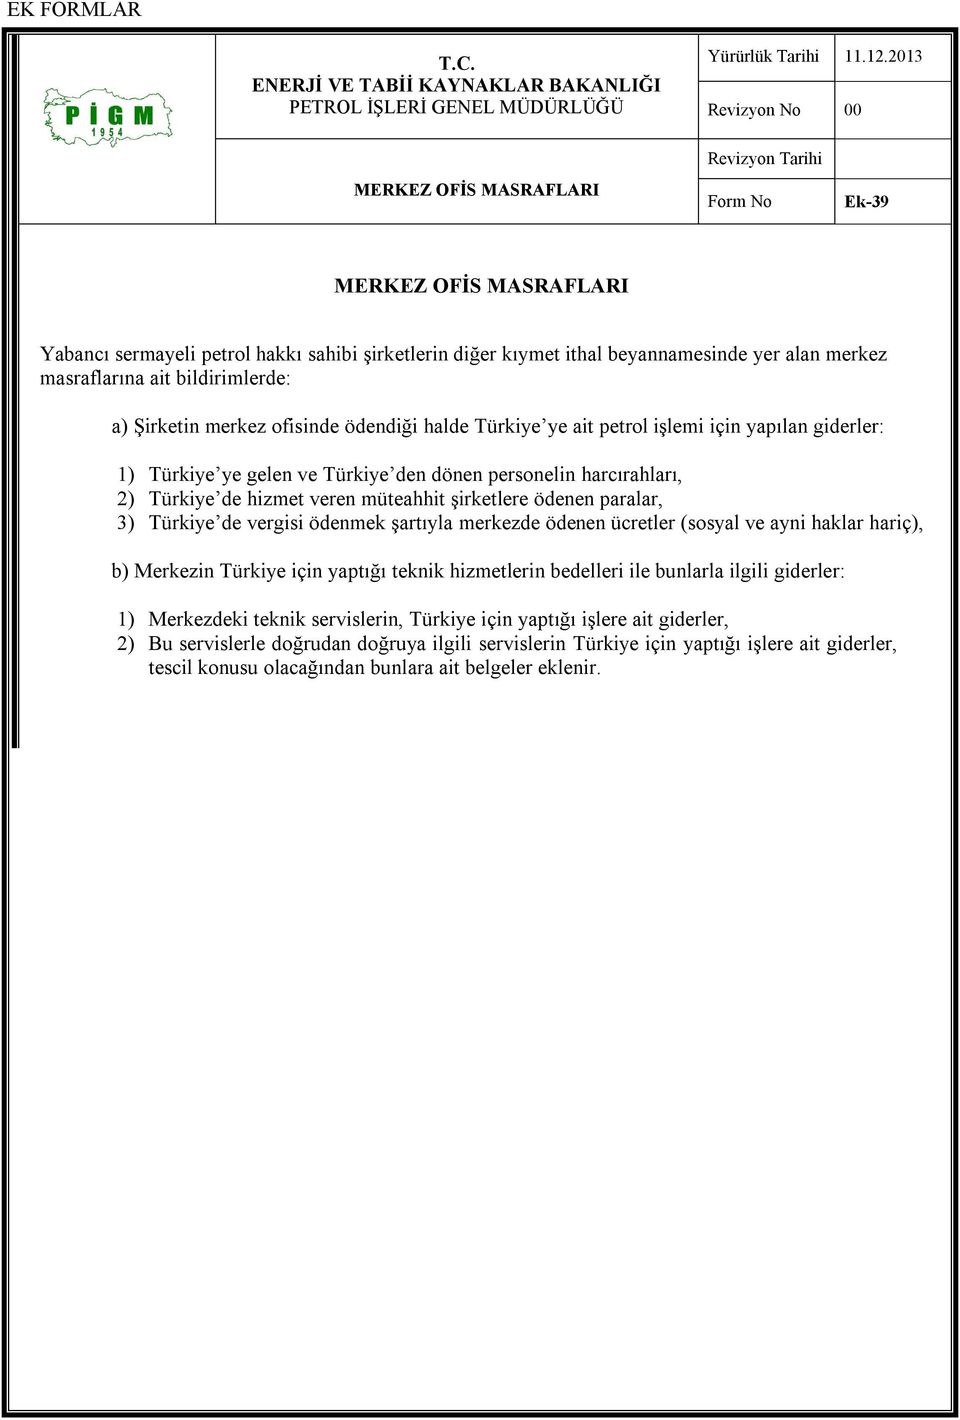 ödenen paralar, 3) Türkiye de vergisi ödenmek şartıyla merkezde ödenen ücretler (sosyal ve ayni haklar hariç), b) Merkezin Türkiye için yaptığı teknik hizmetlerin bedelleri ile bunlarla ilgili